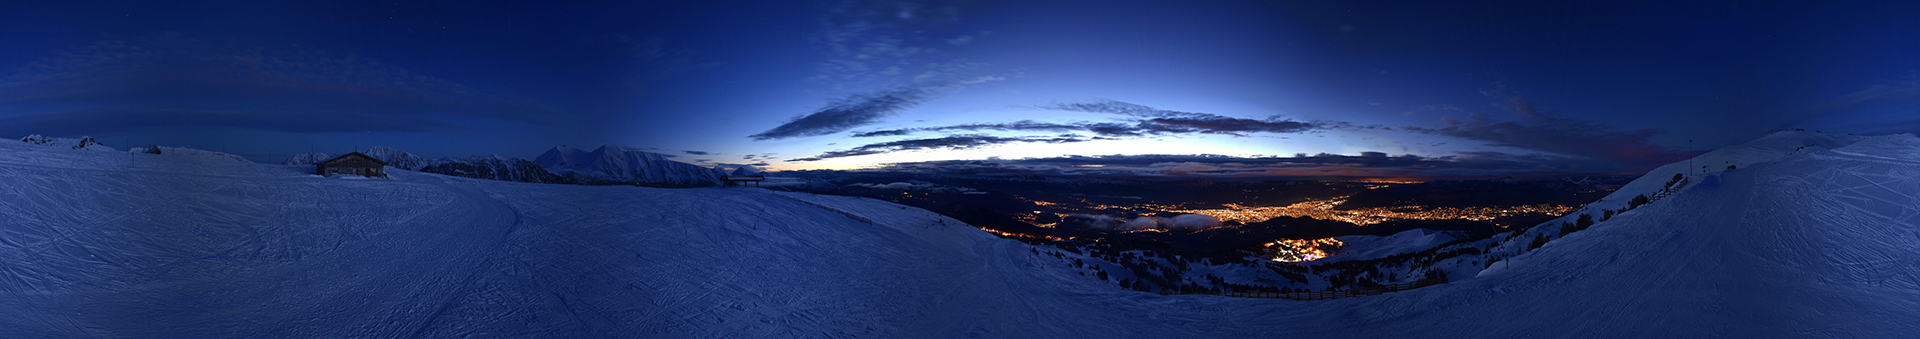 Chamrousse sunset webcam illuminated town 2021 ski resort grenoble isere french alps france - © Skaping